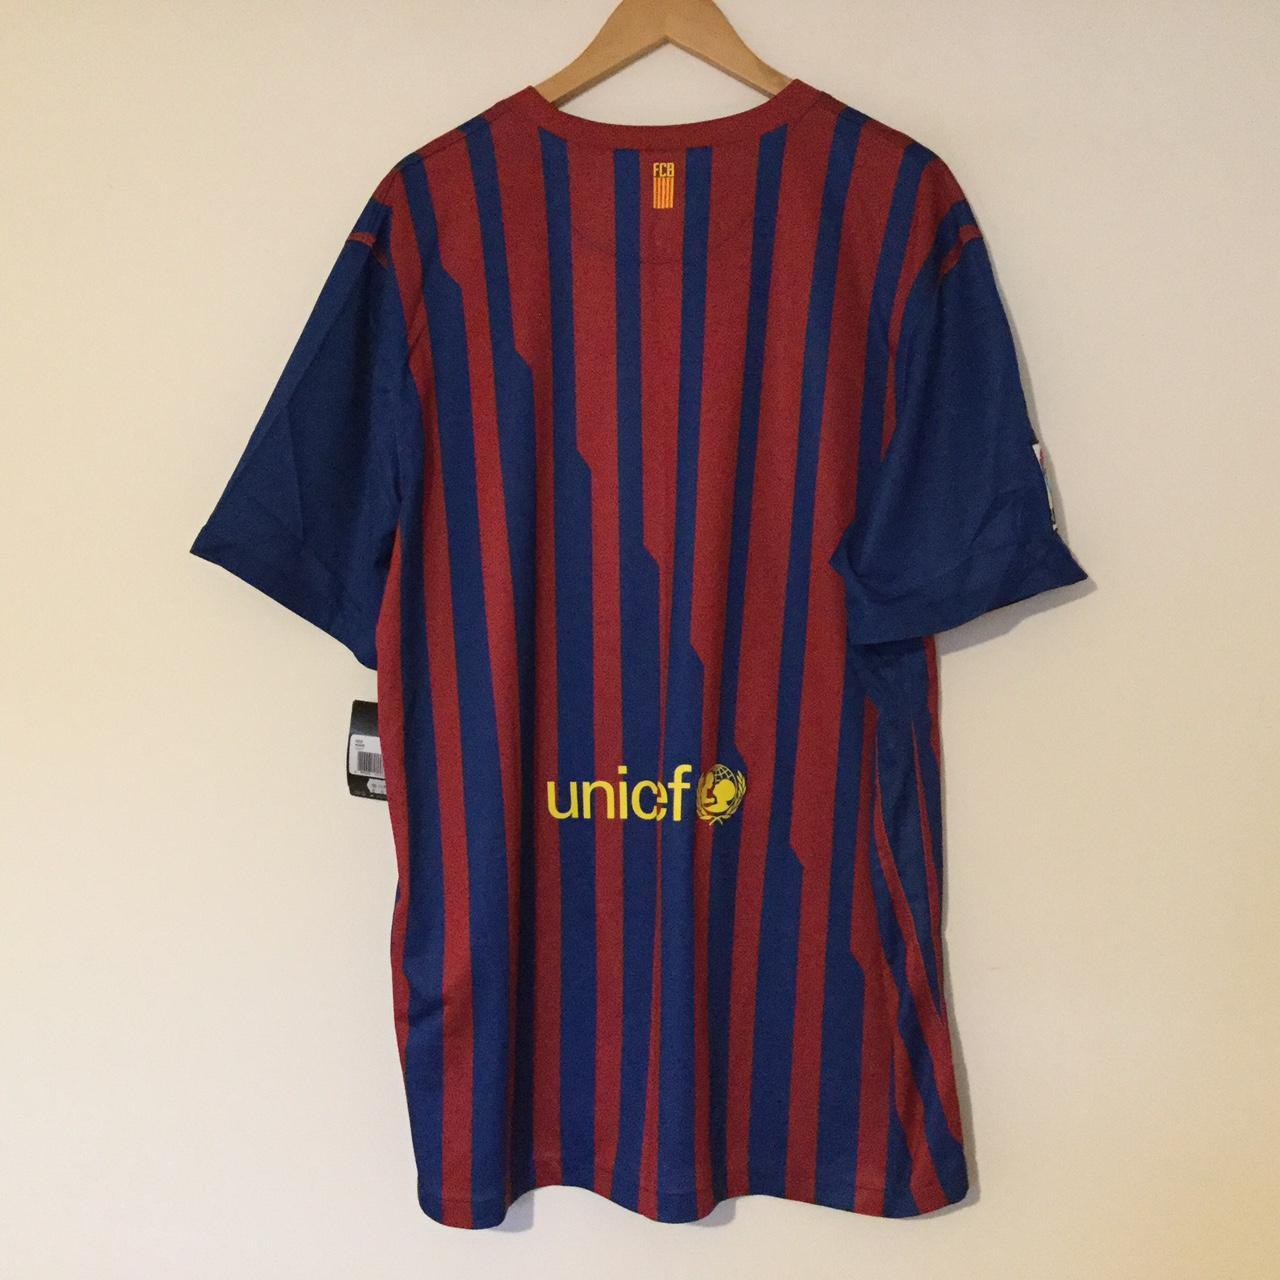 Barcelona - Nike men’s football shirt - t shirt -... - Depop